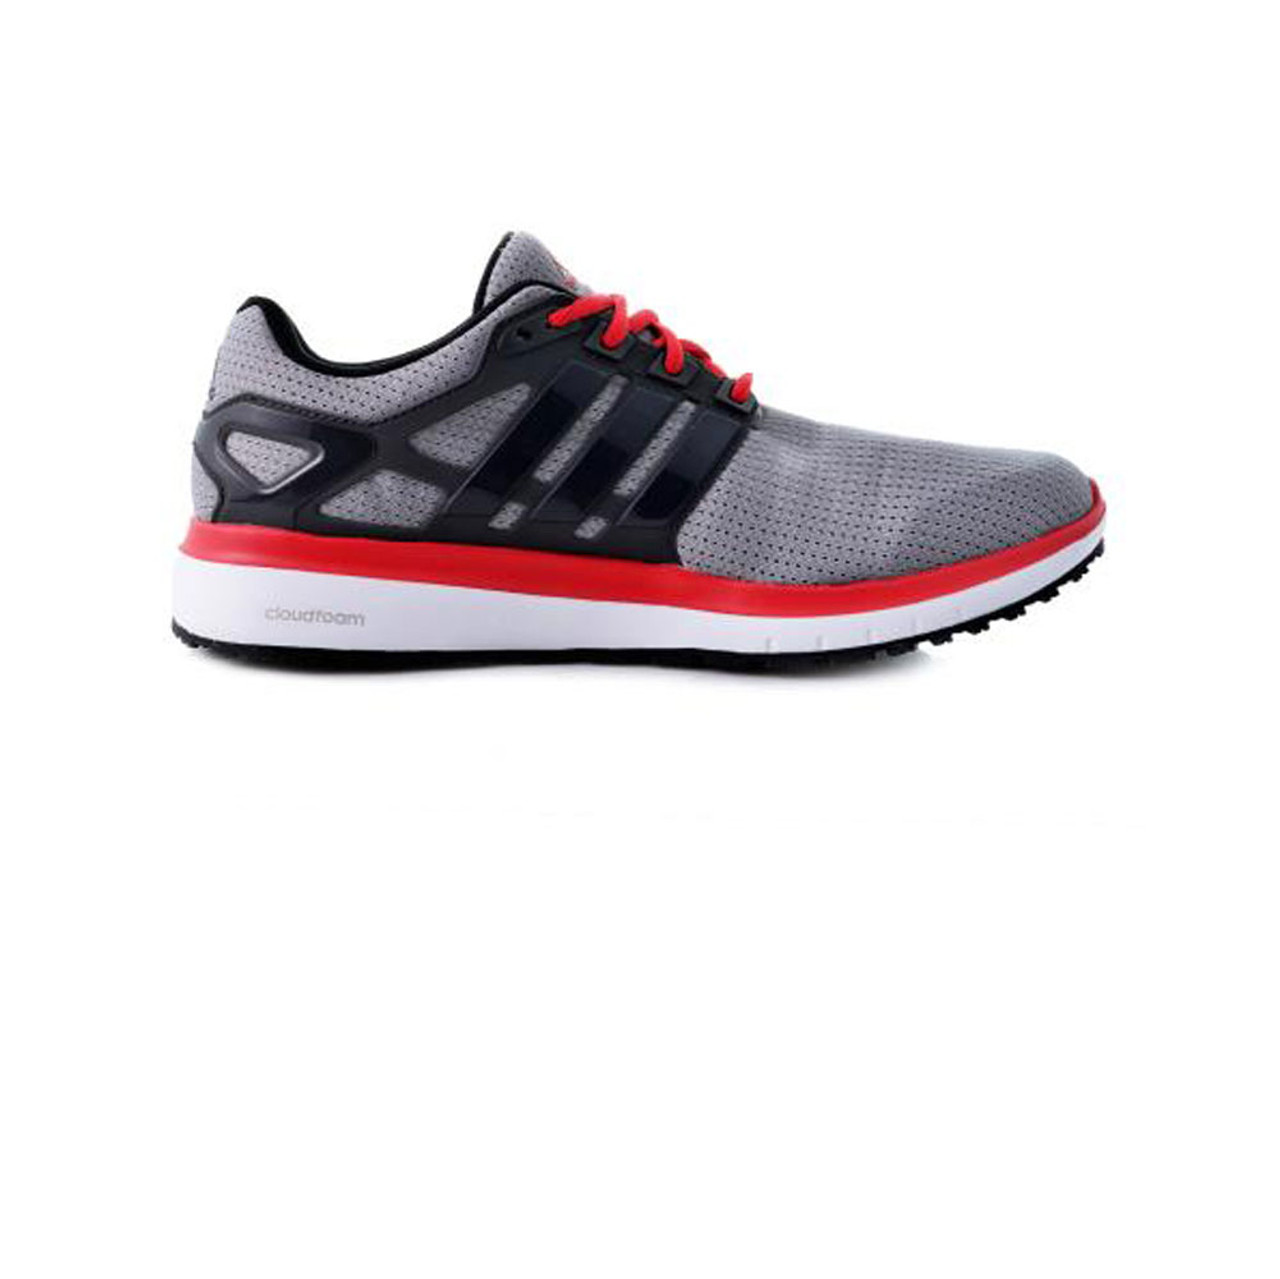 Adidas Energy WTC Running Shoe - Grey Discount Adidas Men's Shoes & More - Shoolu.com | Shoolu.com